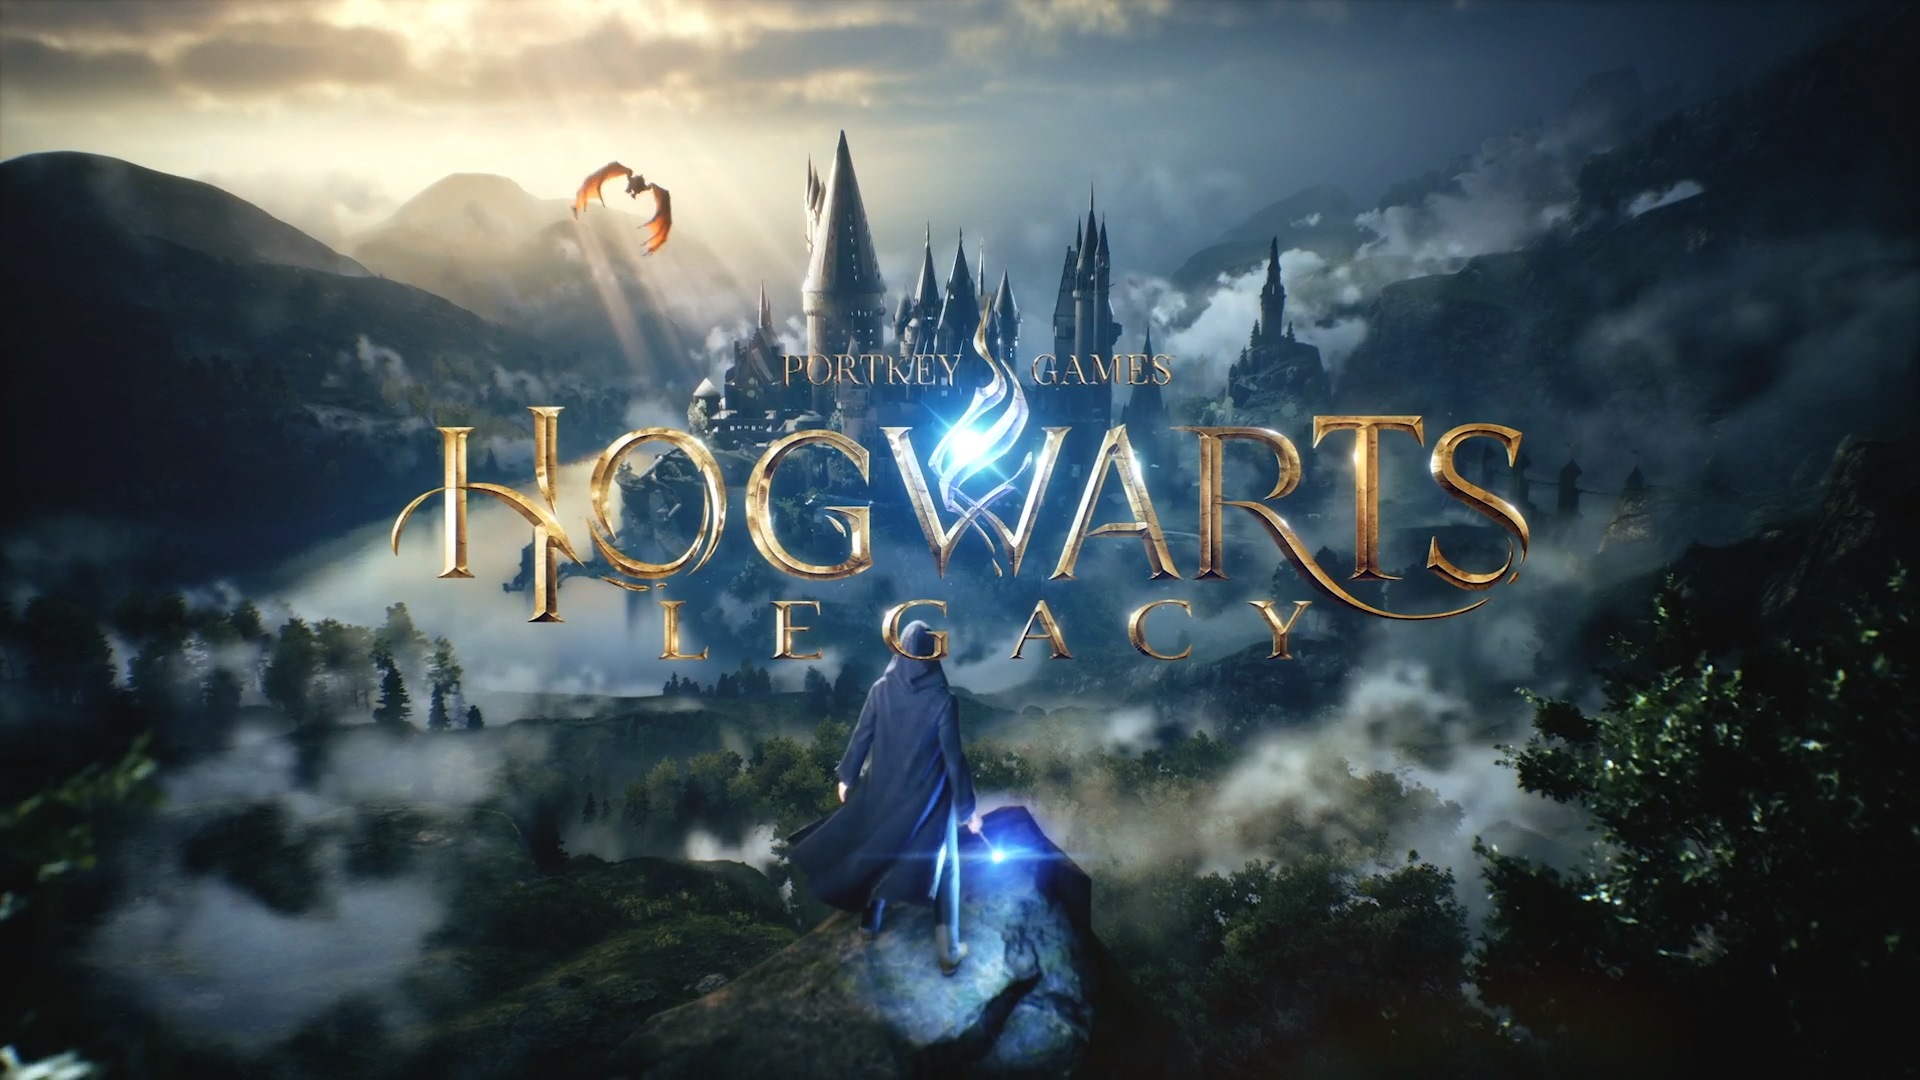 Hogwarts Legacy ستباع مقابل 70 دولار ويبدو بأنّها لن تقدّم خيار الترقية المجانية إلى نسخة الجيل الحالي